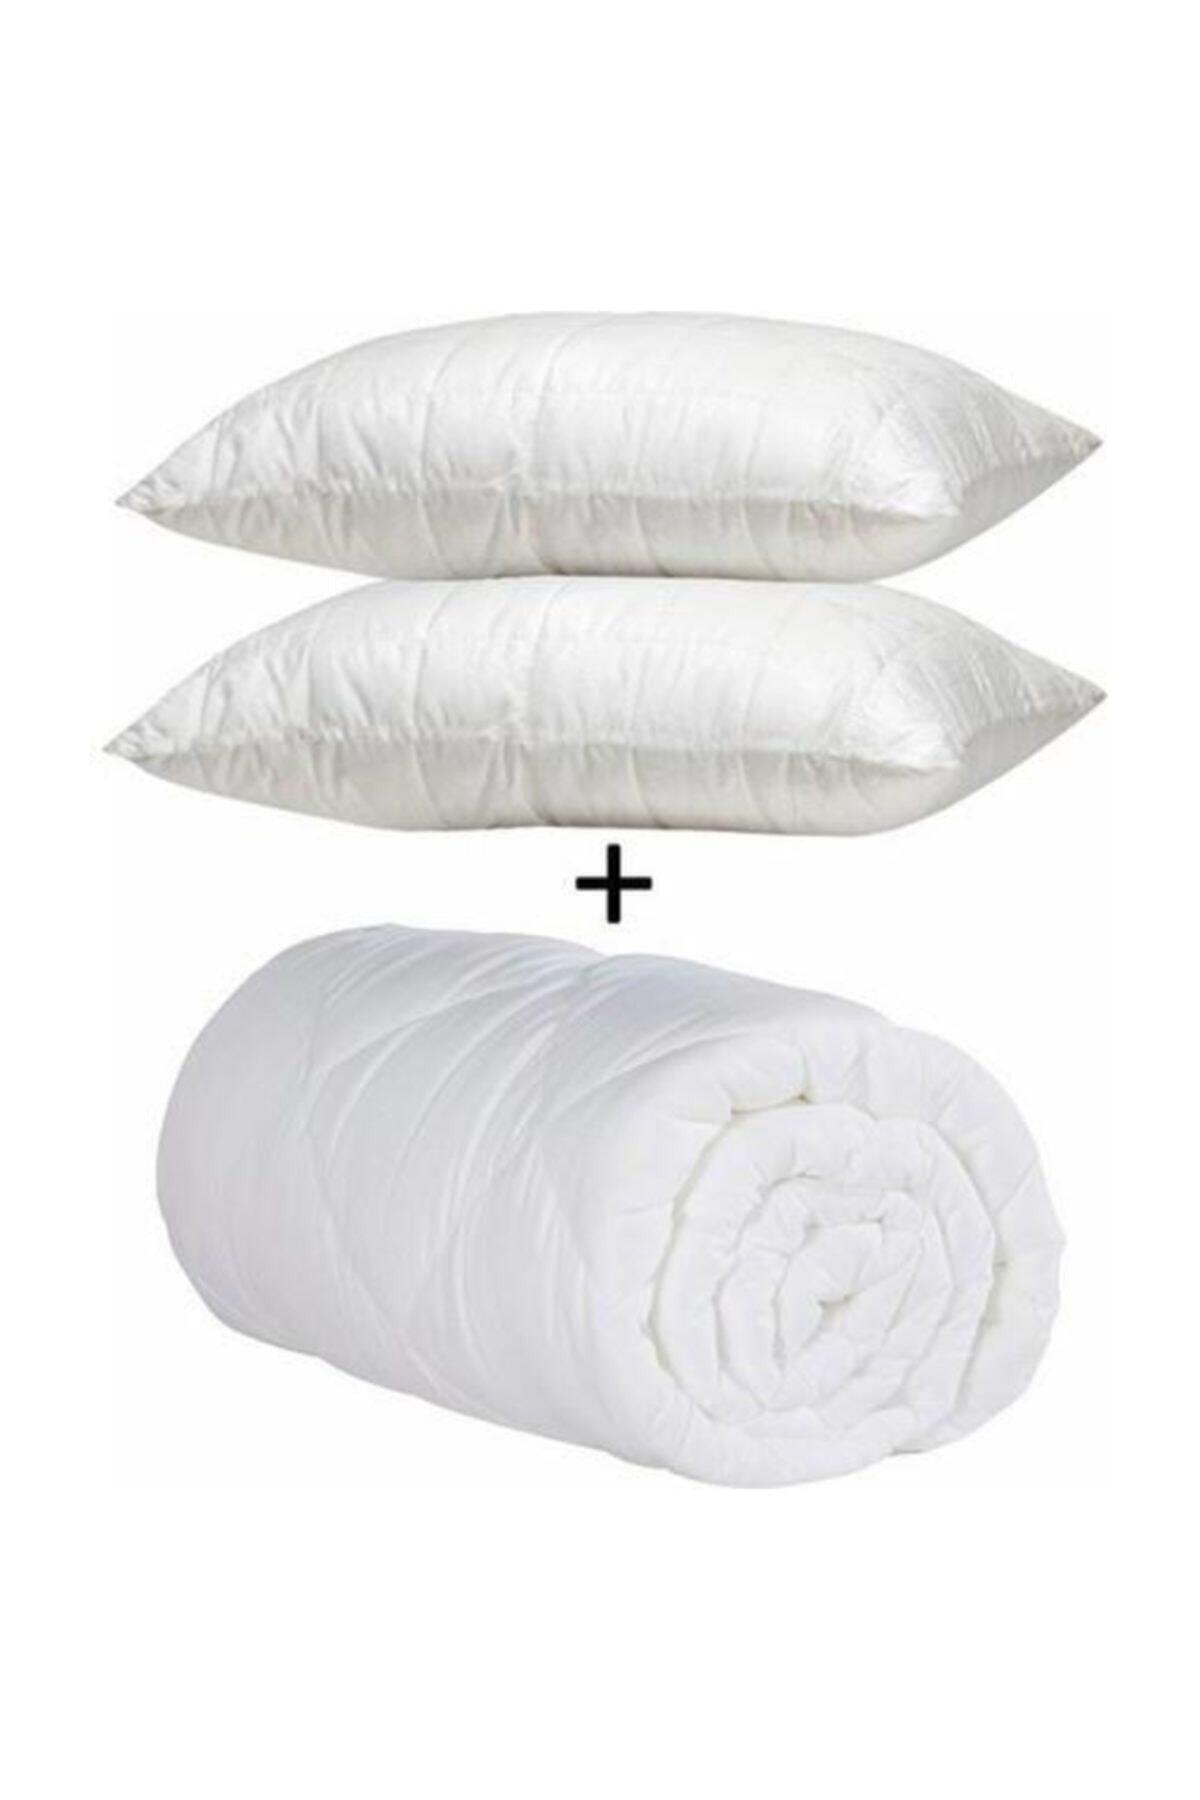 Double Microfiber Quilt Set + 2 Pillows - Swordslife